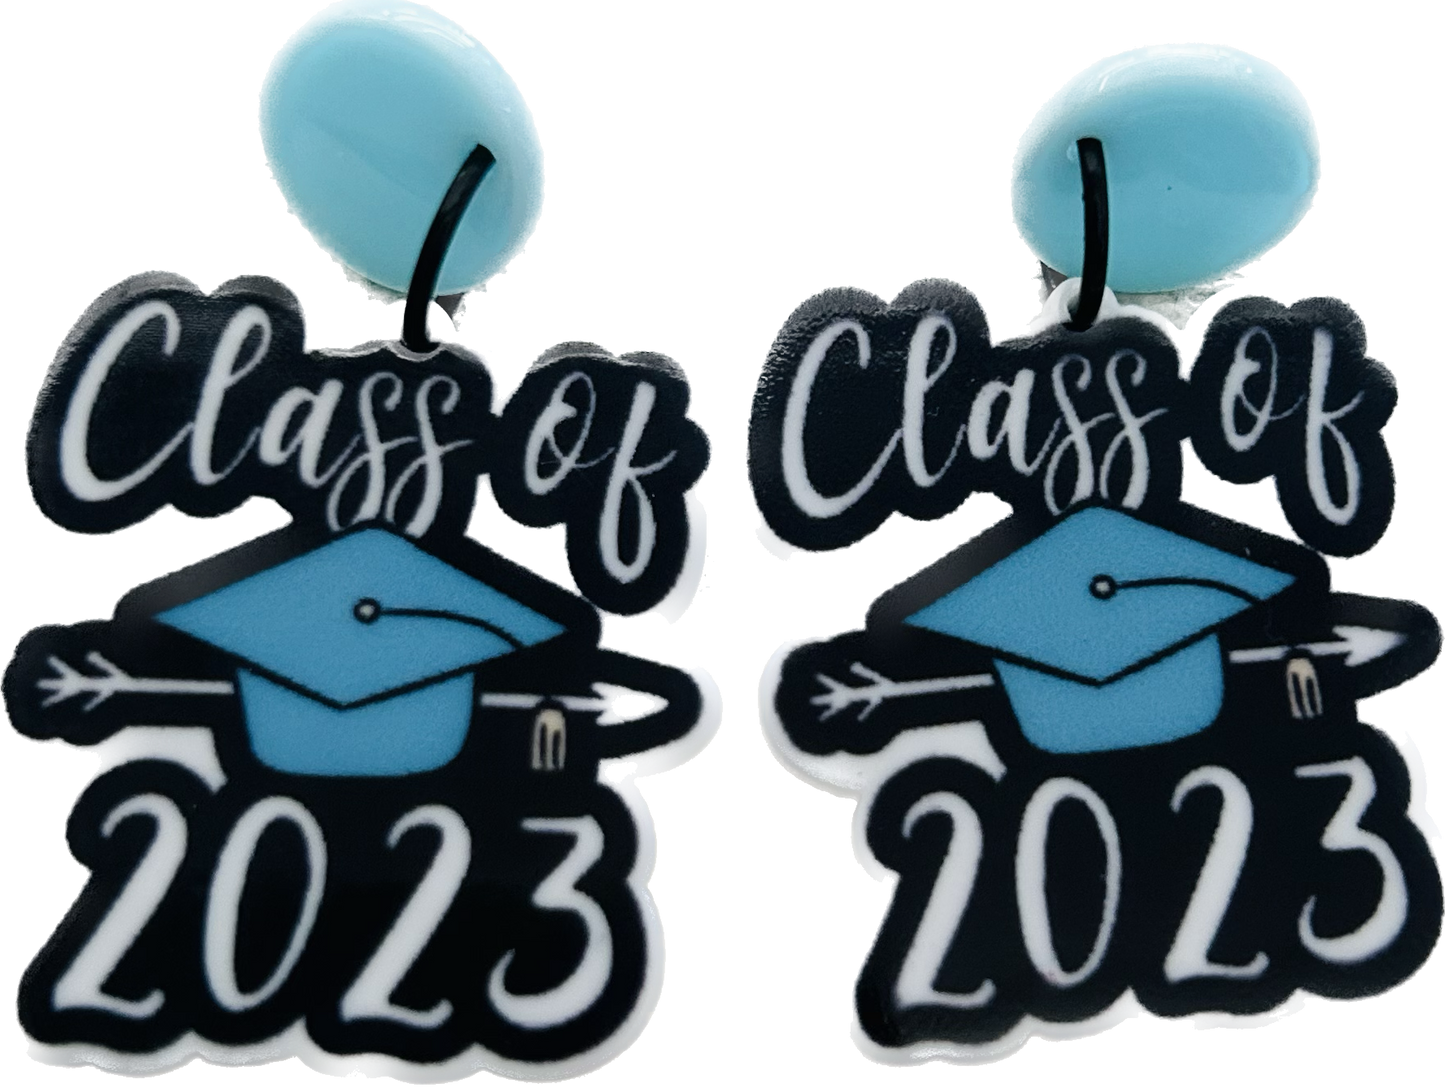 Class of 2023 graduation earrings